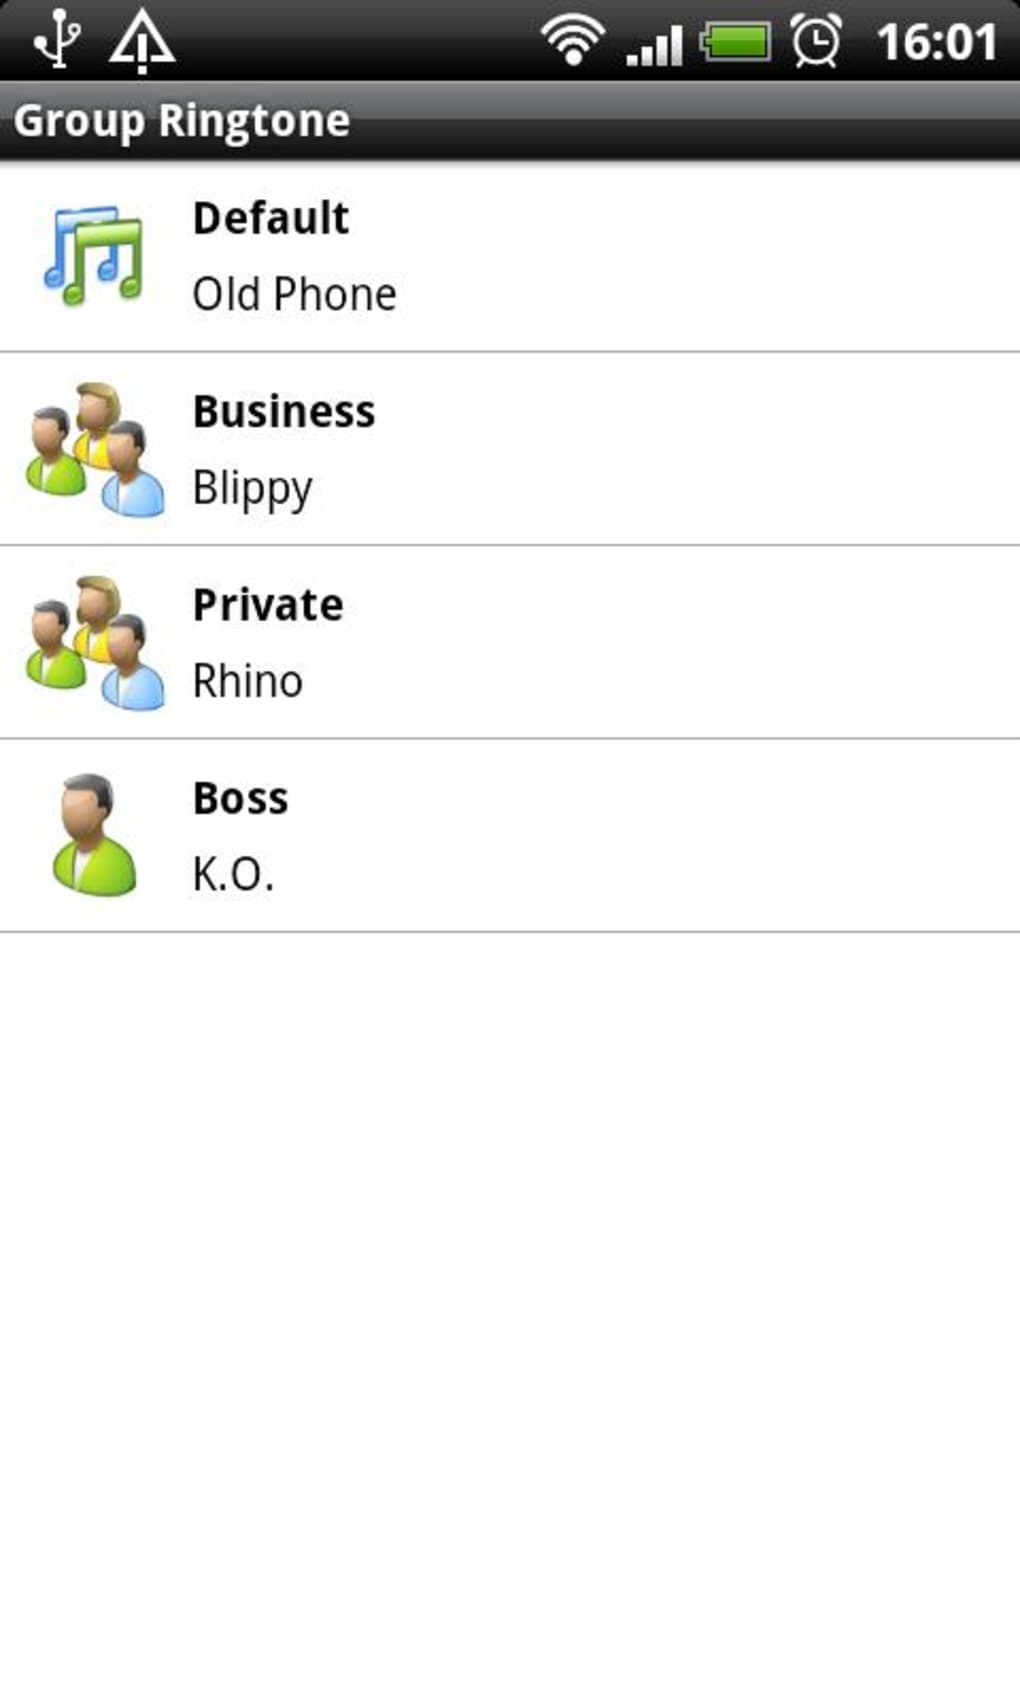 Группы контактов в андроид. Группа андроид. Группа рингтон. Ringtone на русском языке. Android Group profile.